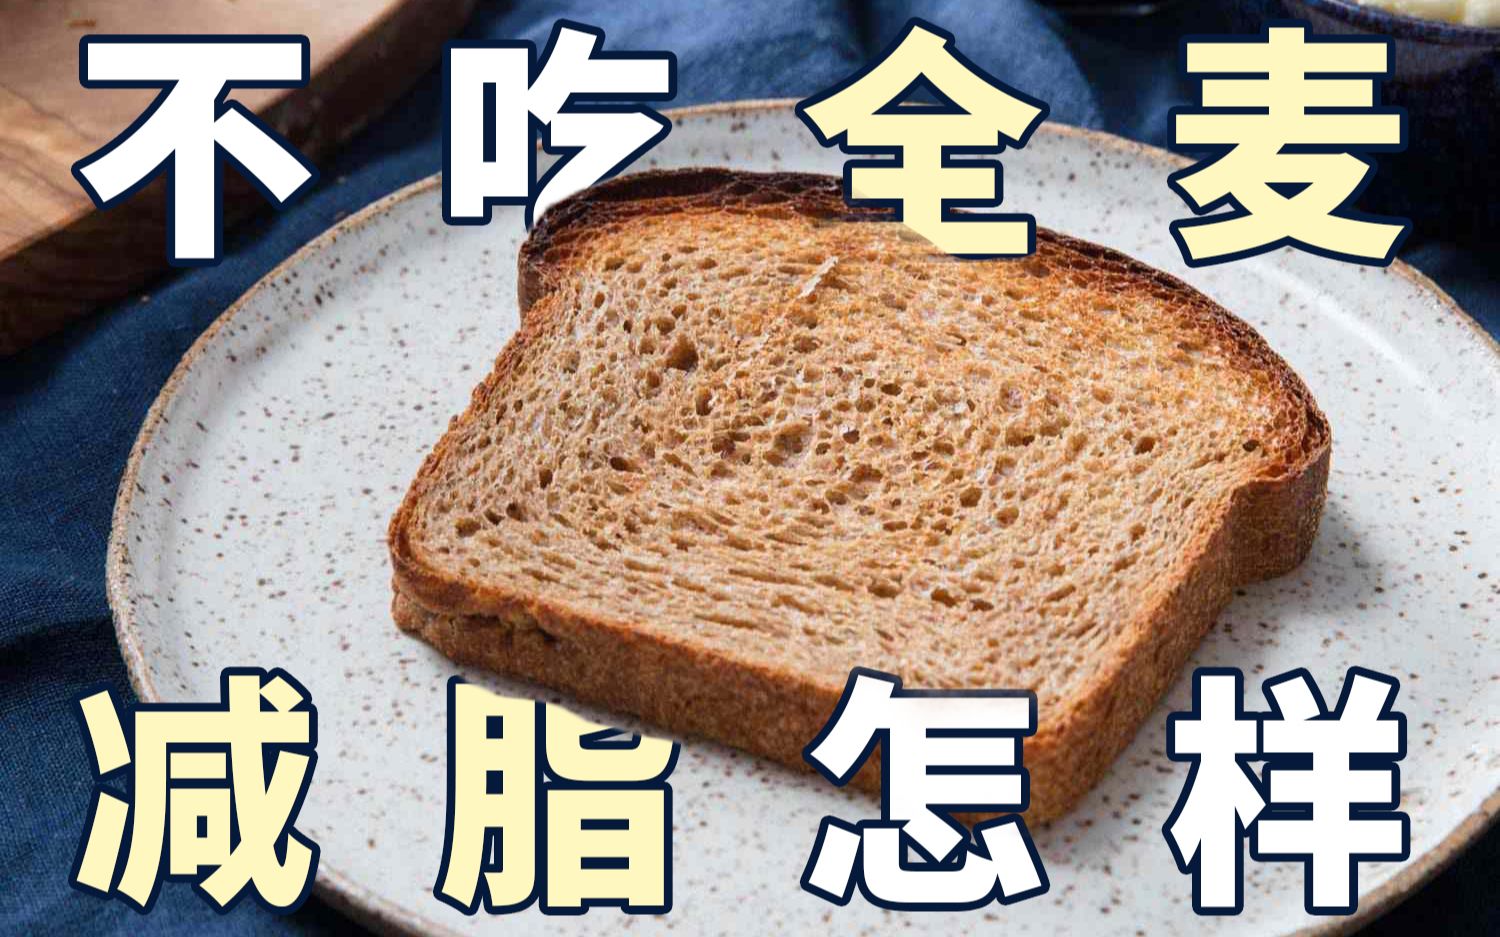 不敢吃白面包啊！减脂又不一定非要100%全麦面包，别全麦面包焦虑症啦